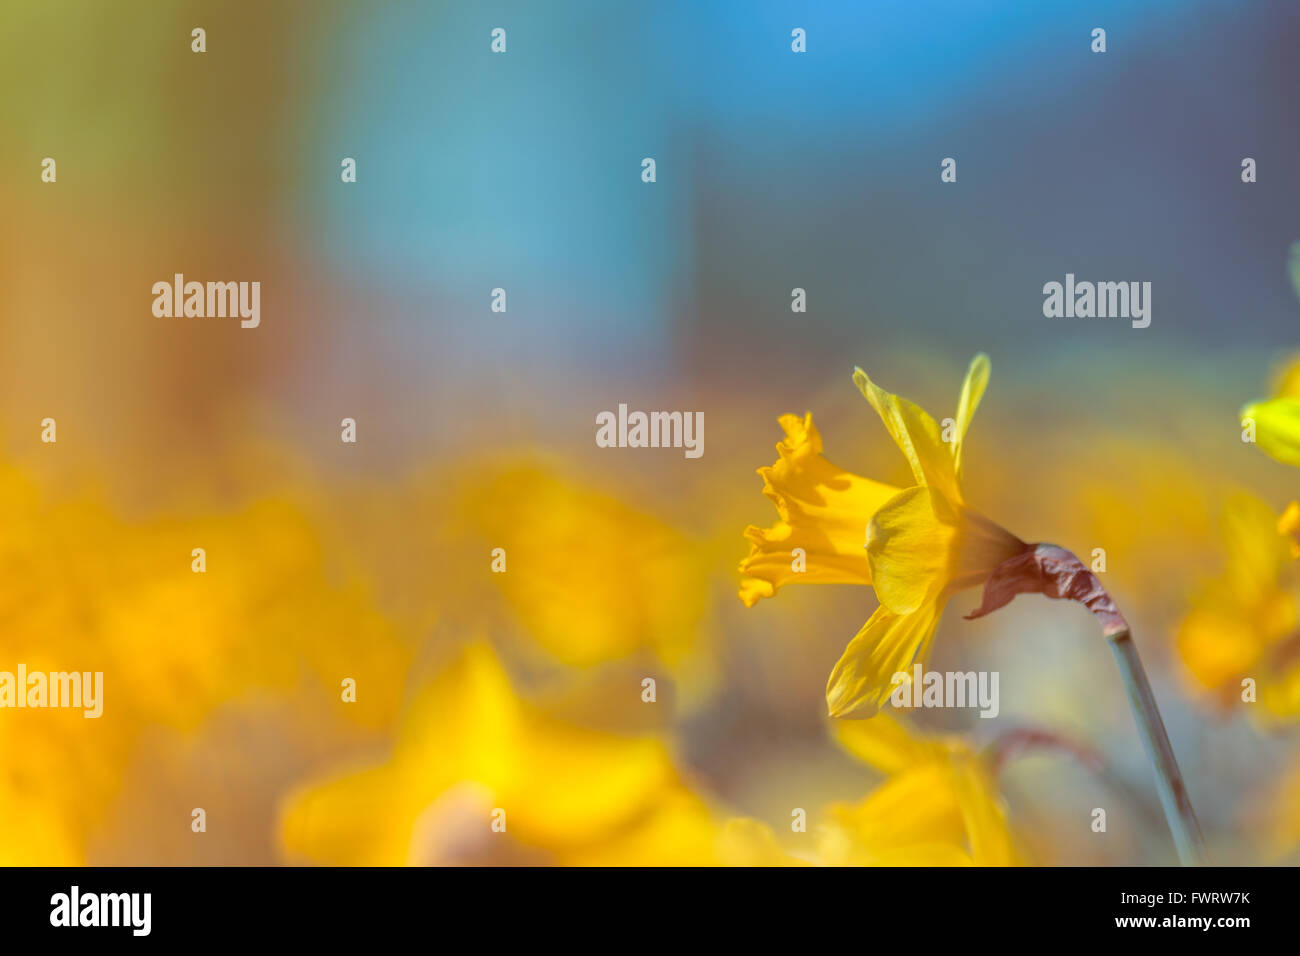 Jaune jonquille fleur sur fond abstrait floue colorée, l'utilisation créative de la profondeur de champ Banque D'Images